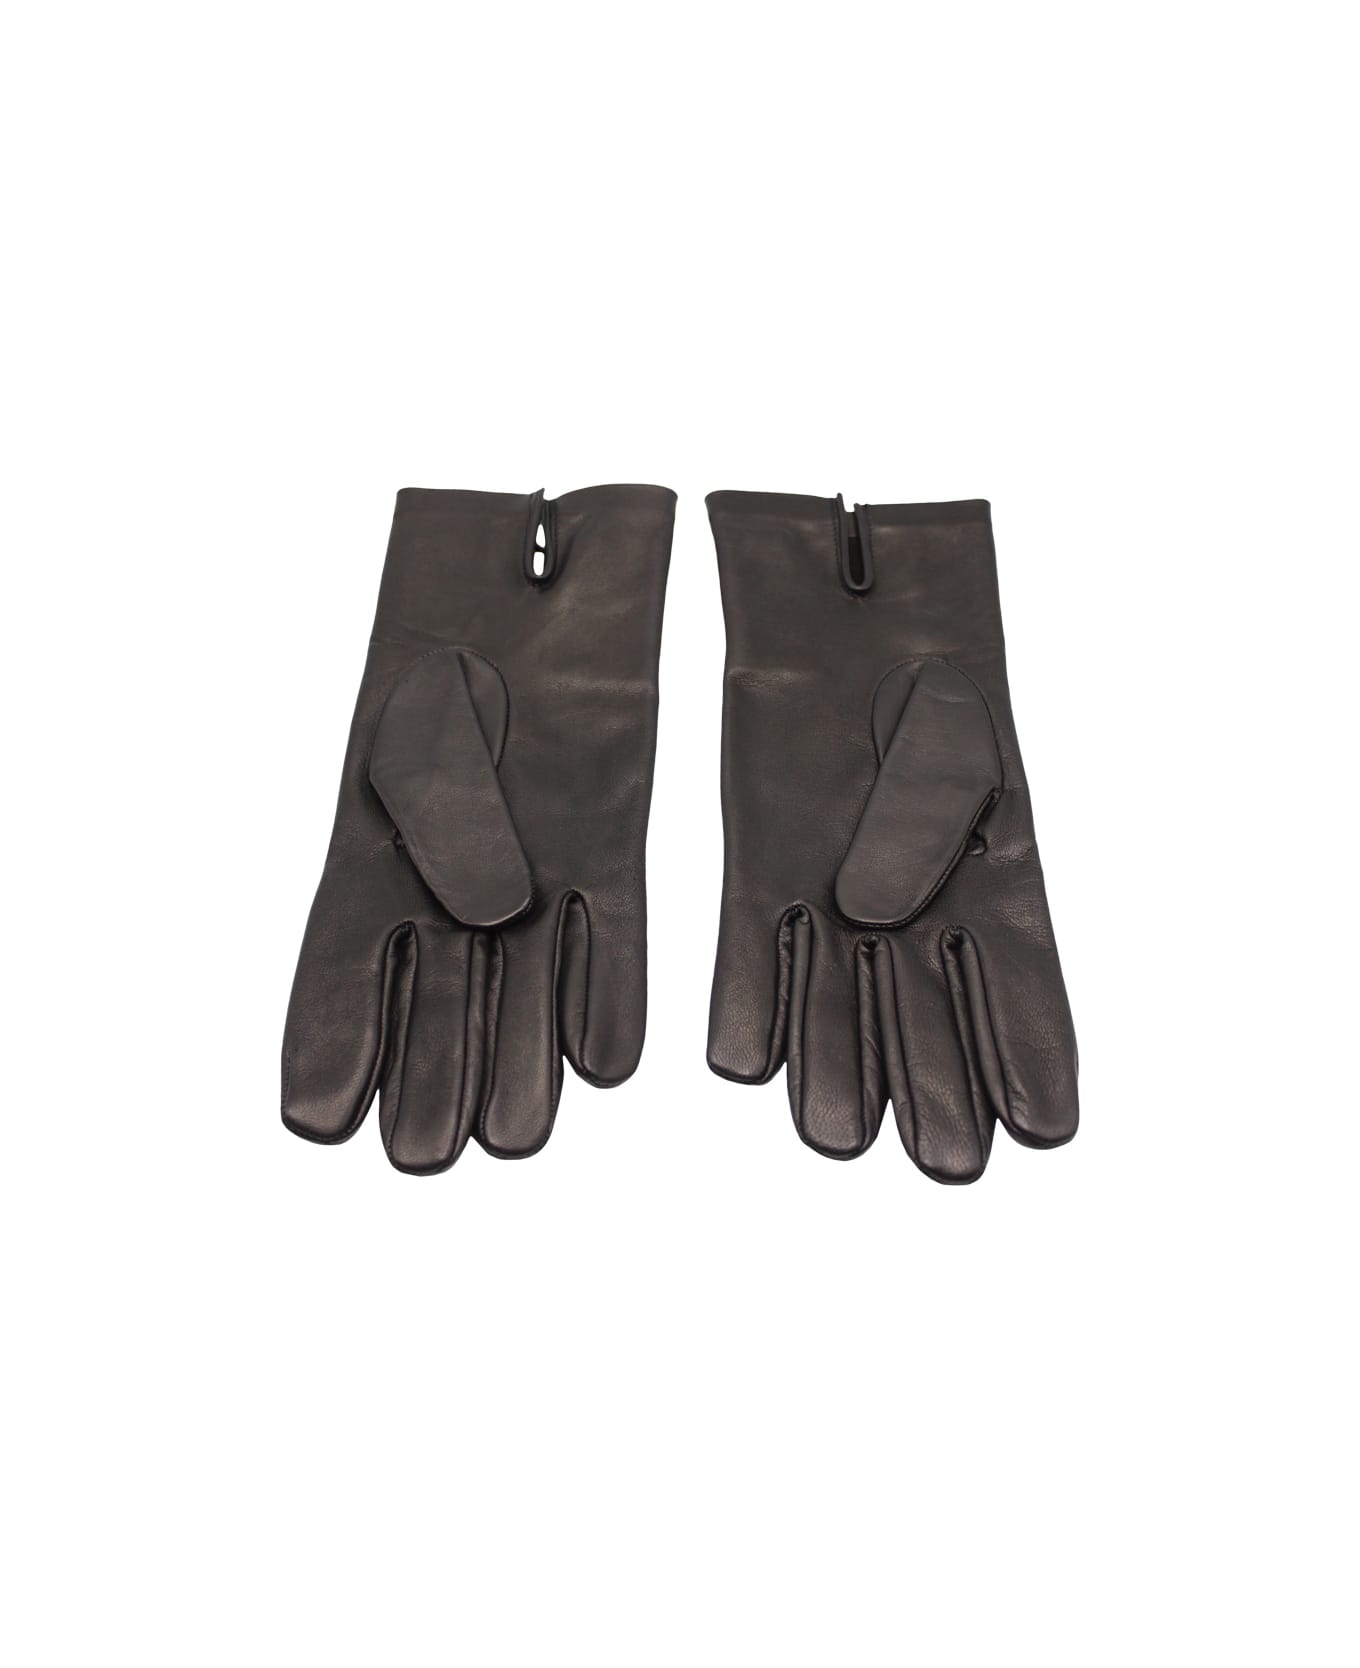 Maison Margiela Leather Gloves